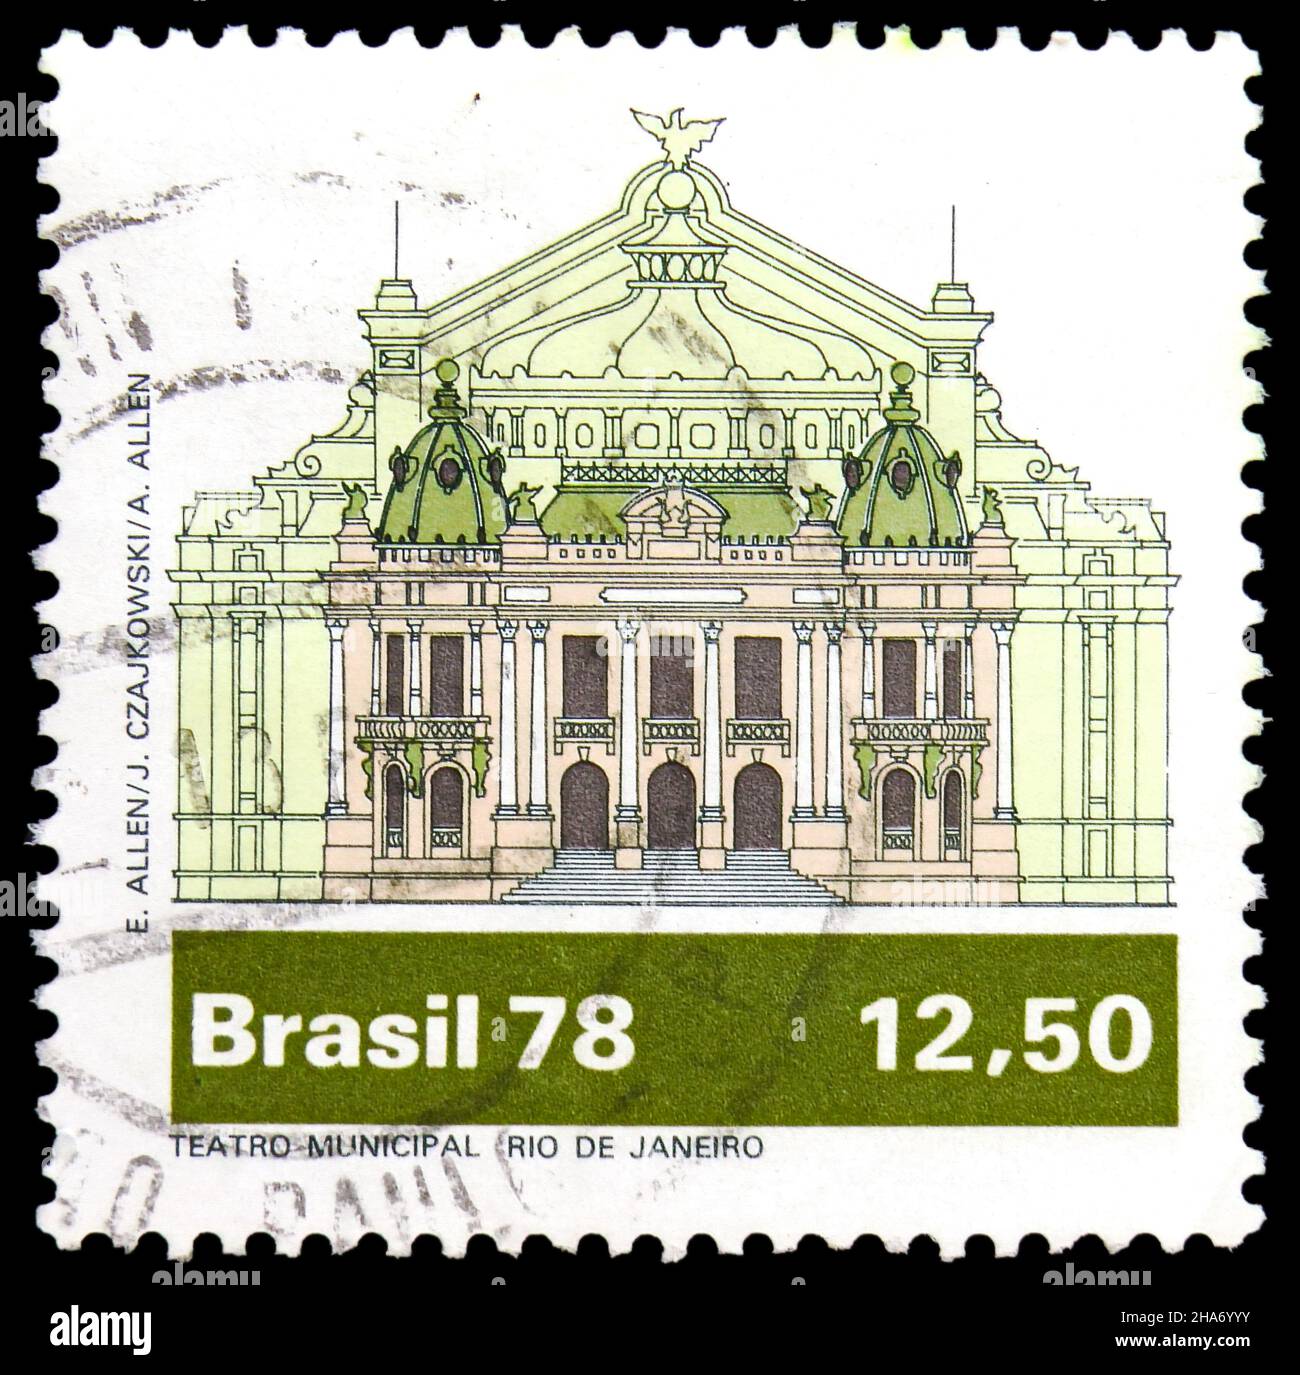 MOSCOU, RUSSIE - 4 NOVEMBRE 2021: Timbre-poste imprimé au Brésil montre Rio de Janeiro, série brésilienne de théâtre, vers 1978 Banque D'Images